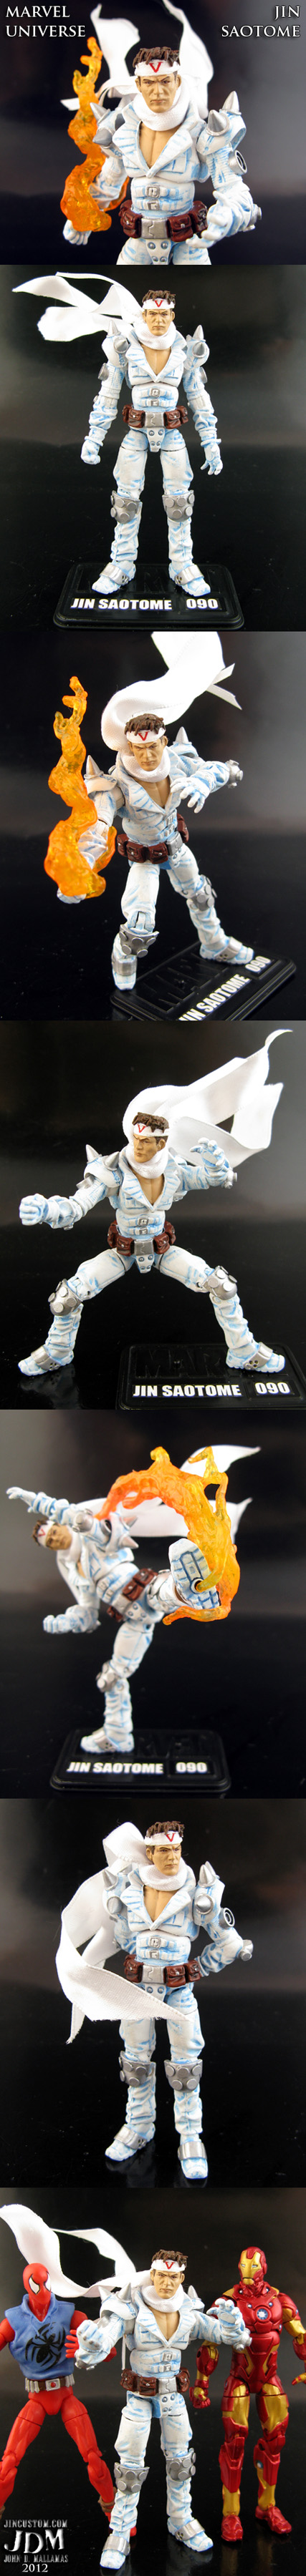 Jin Saotome Action Figure